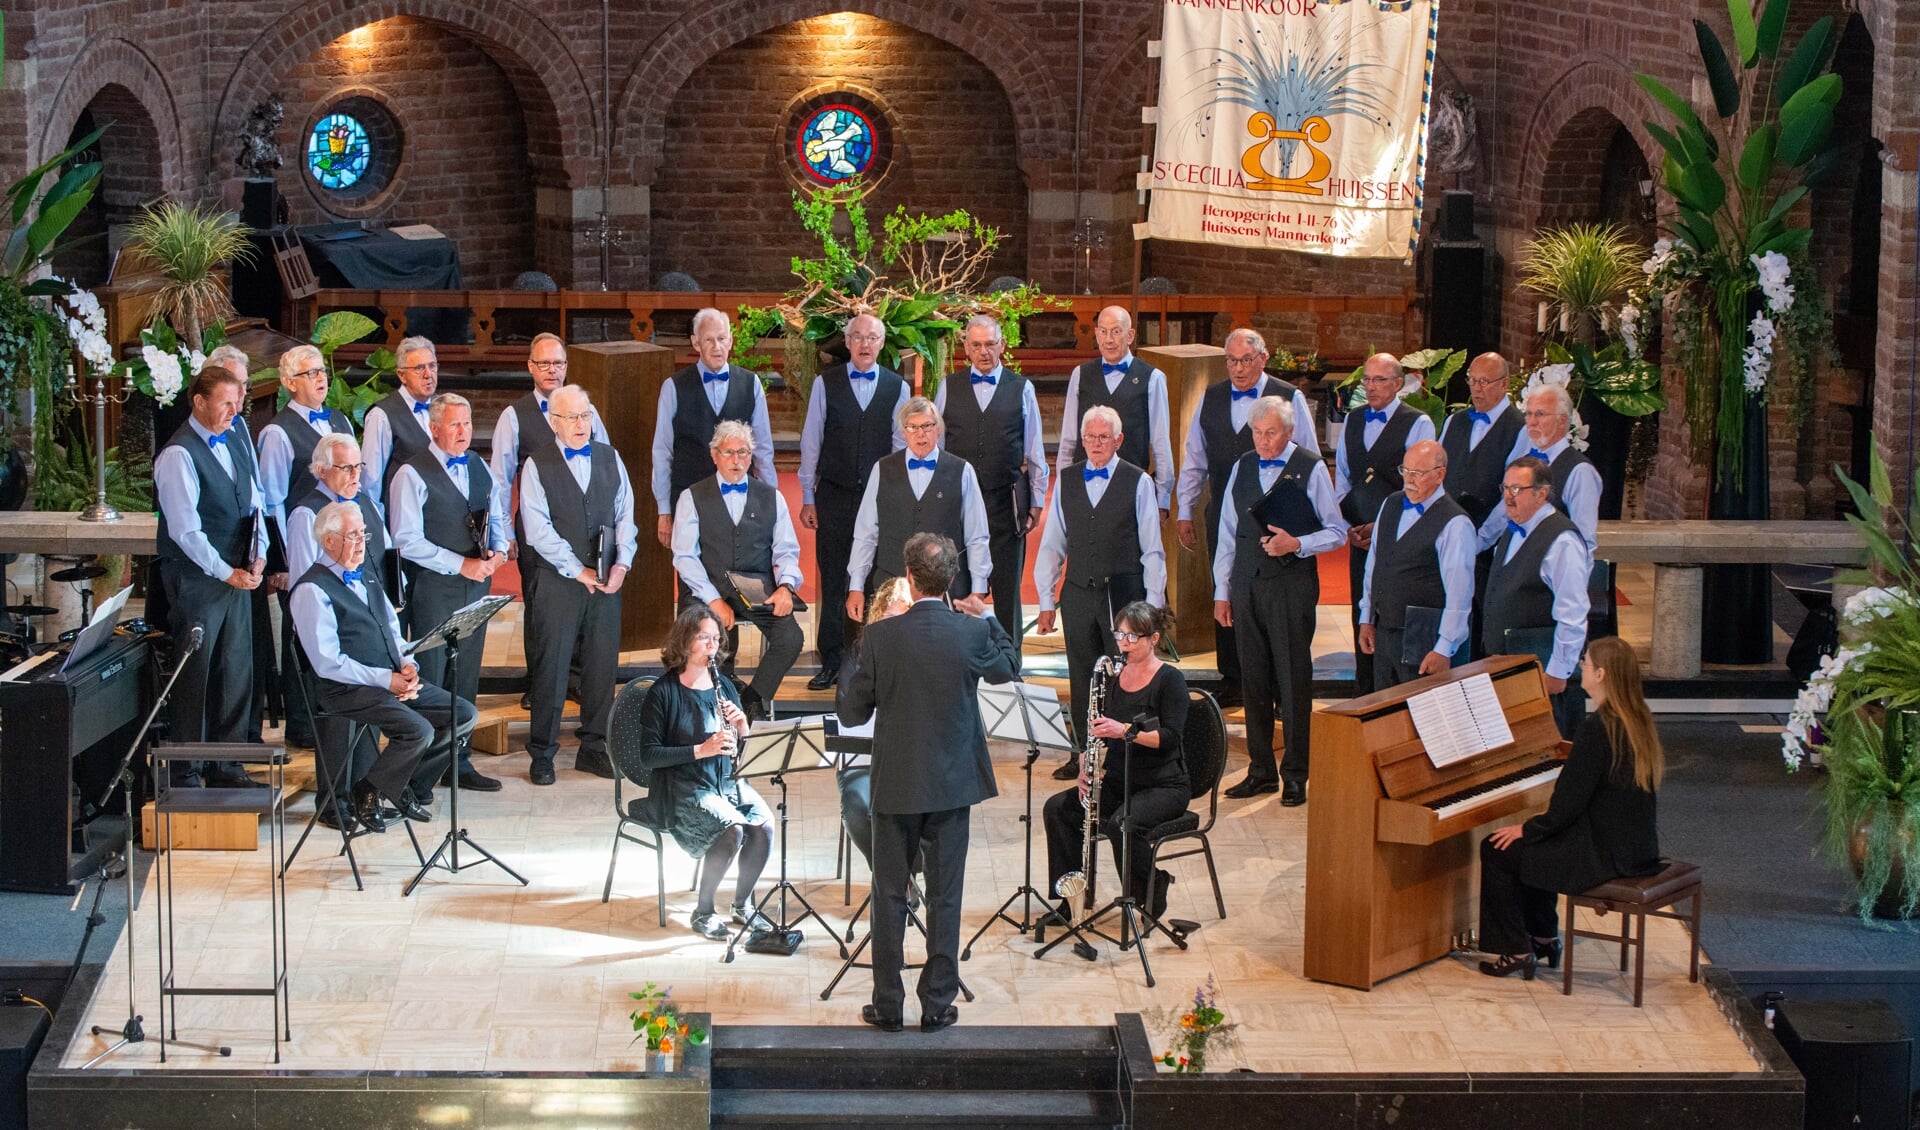 Lingewaards Mannenkoor in concert in de Zandse Kerk. 